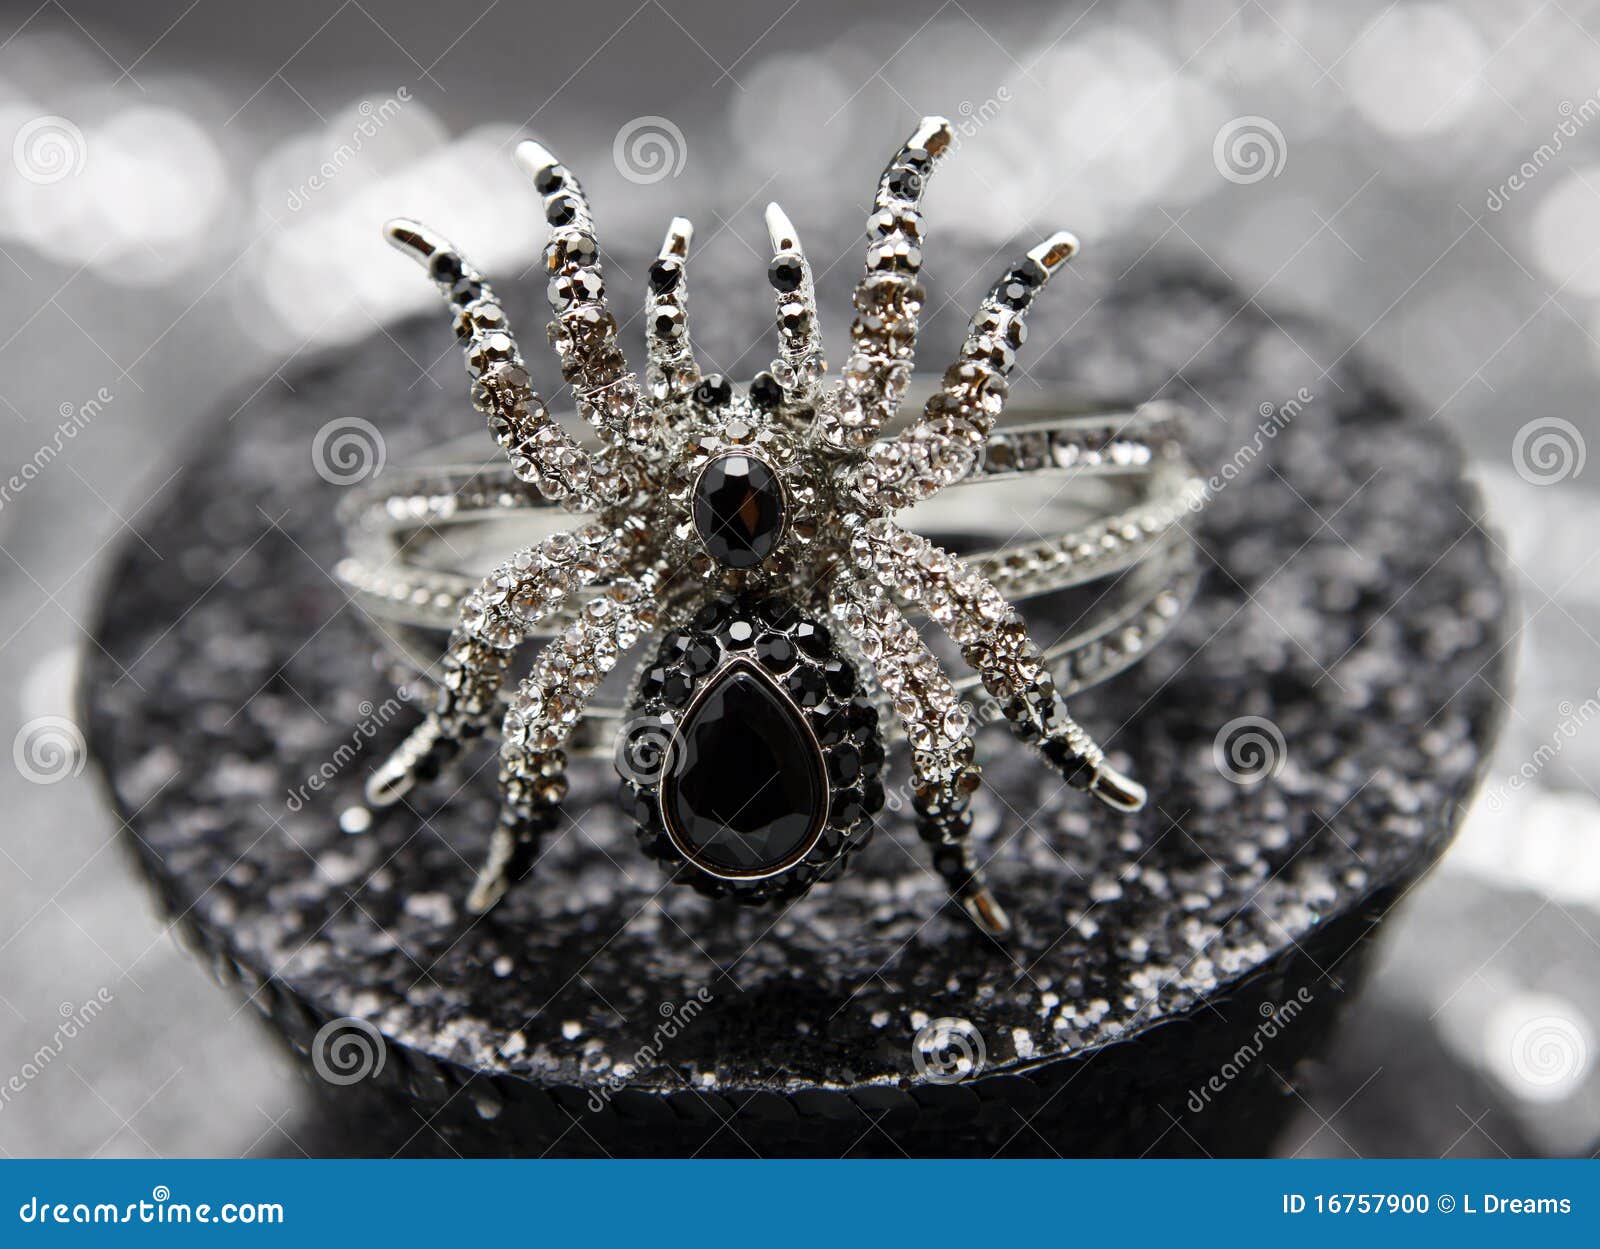 Czarny biżuteryjny pająk. Na tła pięknym czerń plam bokeh bransoletki krystalicznym pokazu błyskotliwości świetle krystaliczny srebro siedzi pająk iskrzastej wdowy